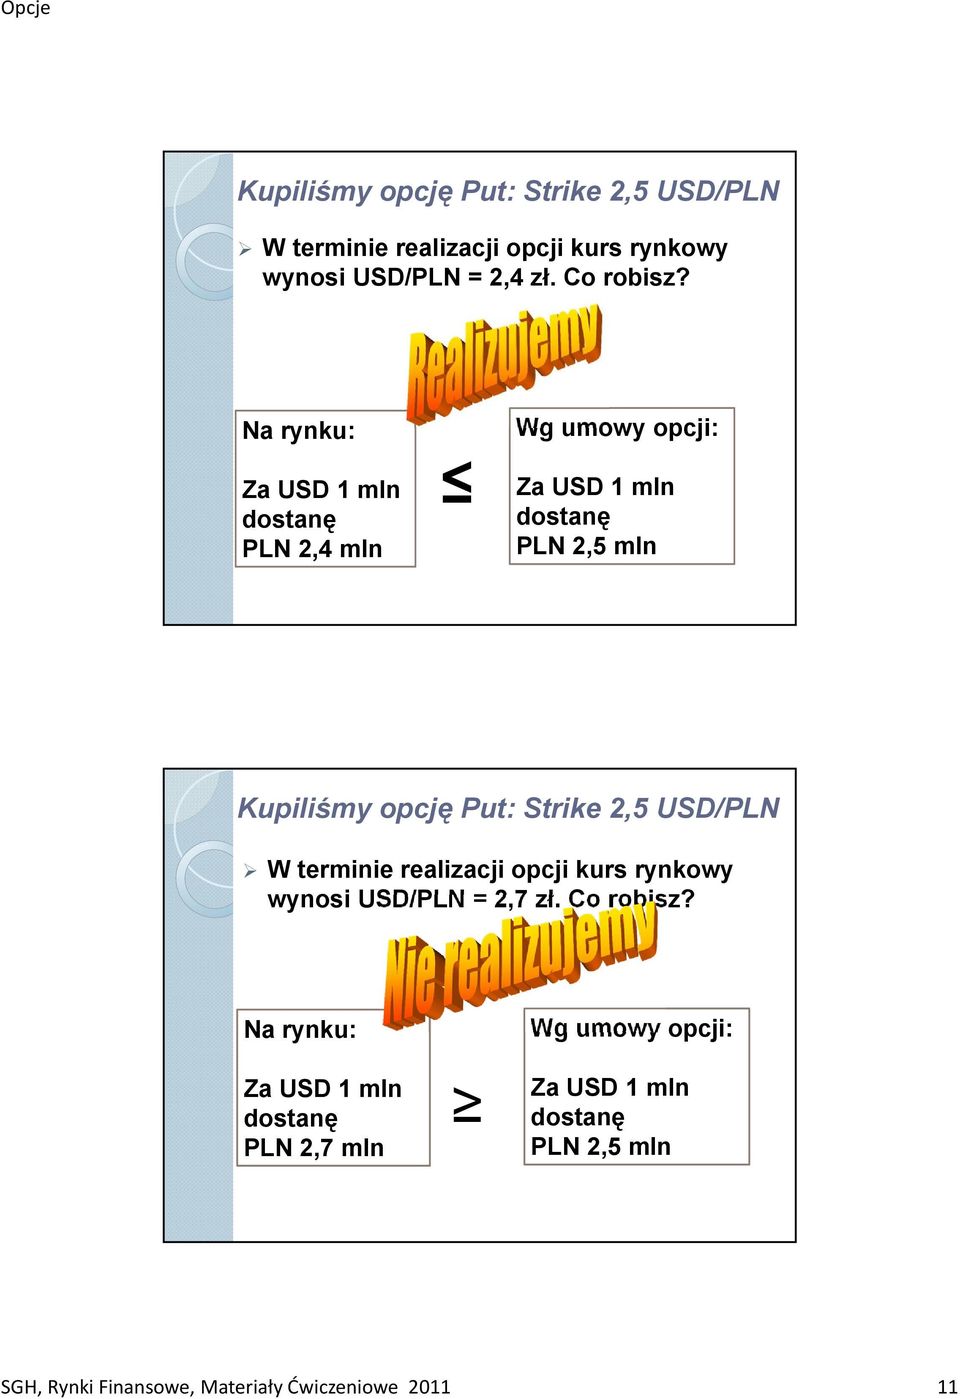 Strike 2,5 USD/PLN W terminie realizacji opcji kurs rynkowy wynosi USD/PLN = 2,7 zł. Co robisz?